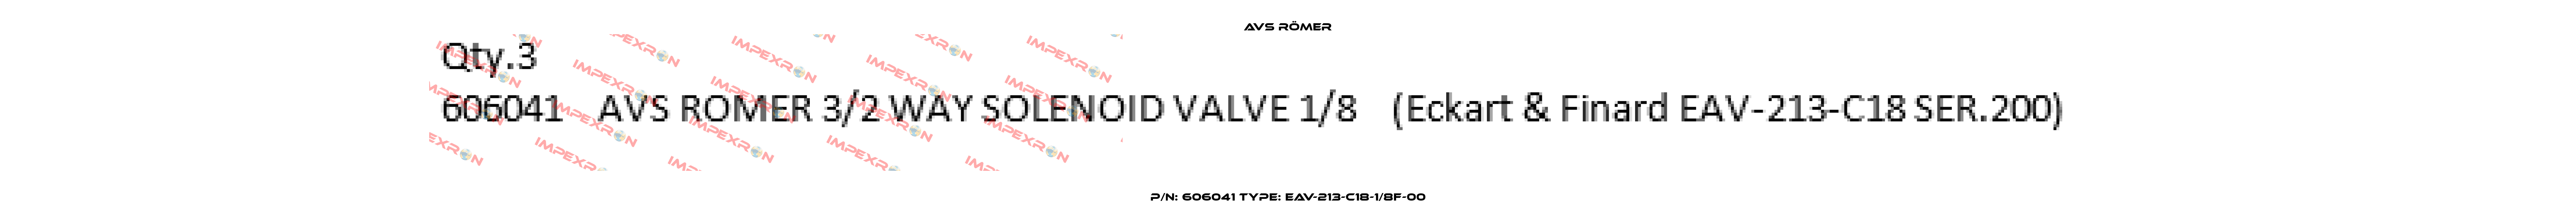 P/N: 606041 Type: EAV-213-C18-1/8F-00 Avs Römer